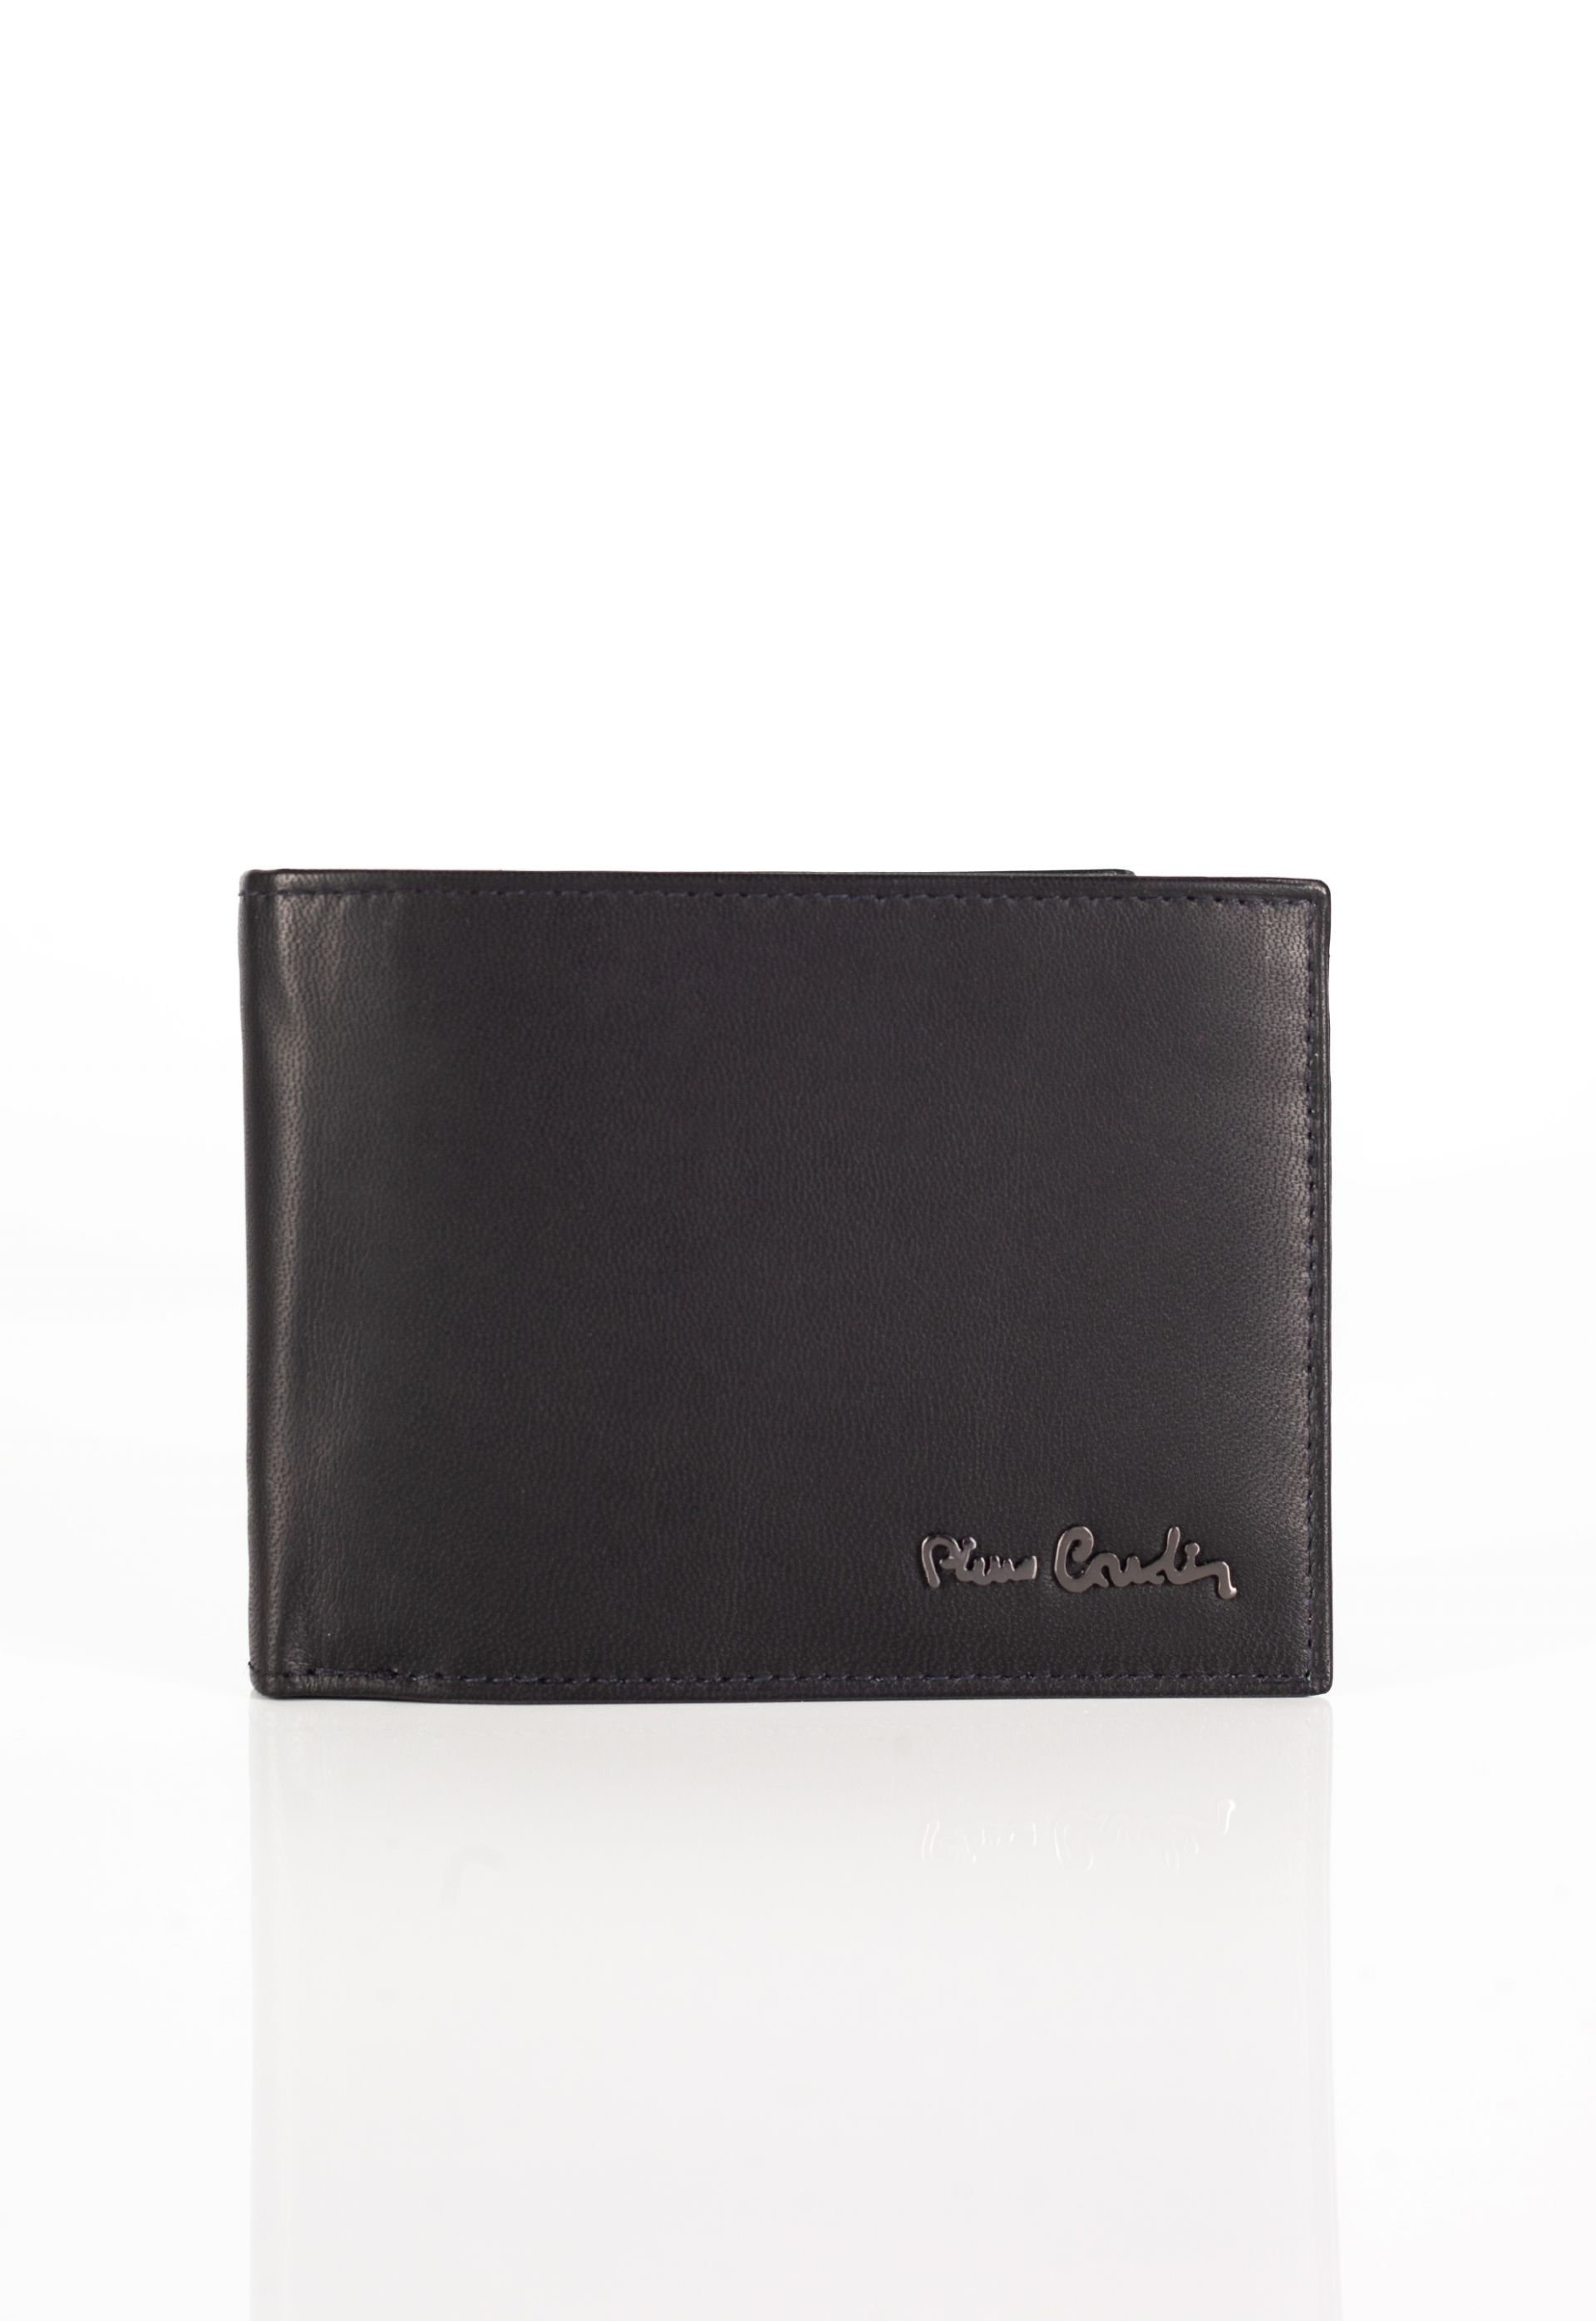 Wallet PIERRE CARDIN 8806-TILAK54-NERO